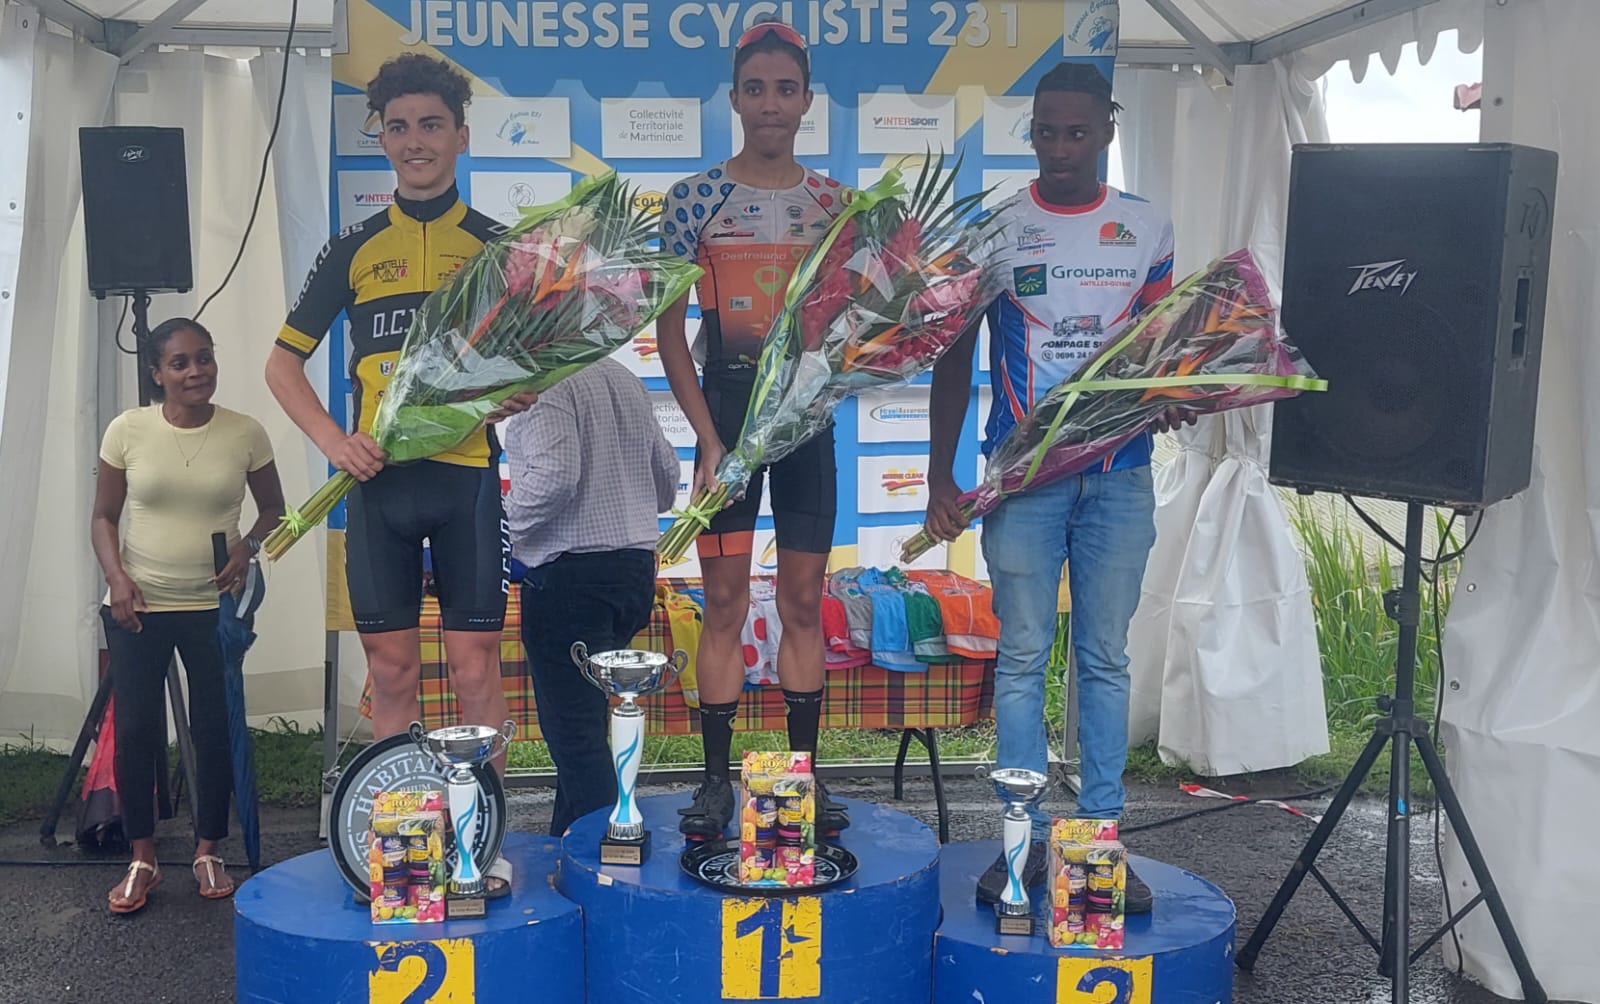     Tour cycliste junior : le guadeloupéen Yonis Peres remporte la première étape

